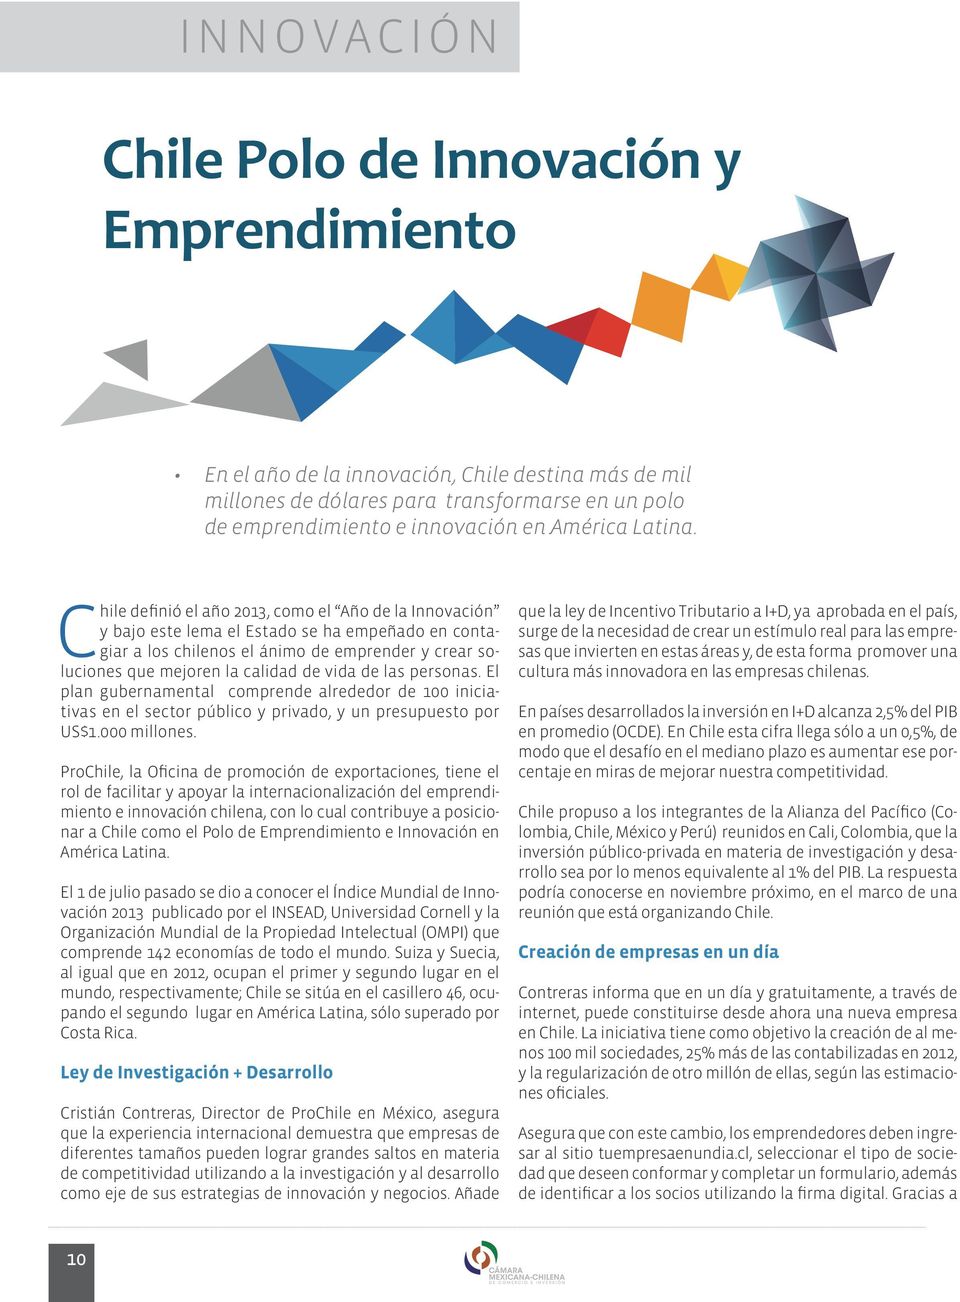 Chile definió el año 2013, como el Año de la Innovación y bajo este lema el Estado se ha empeñado en contagiar a los chilenos el ánimo de emprender y crear soluciones que mejoren la calidad de vida